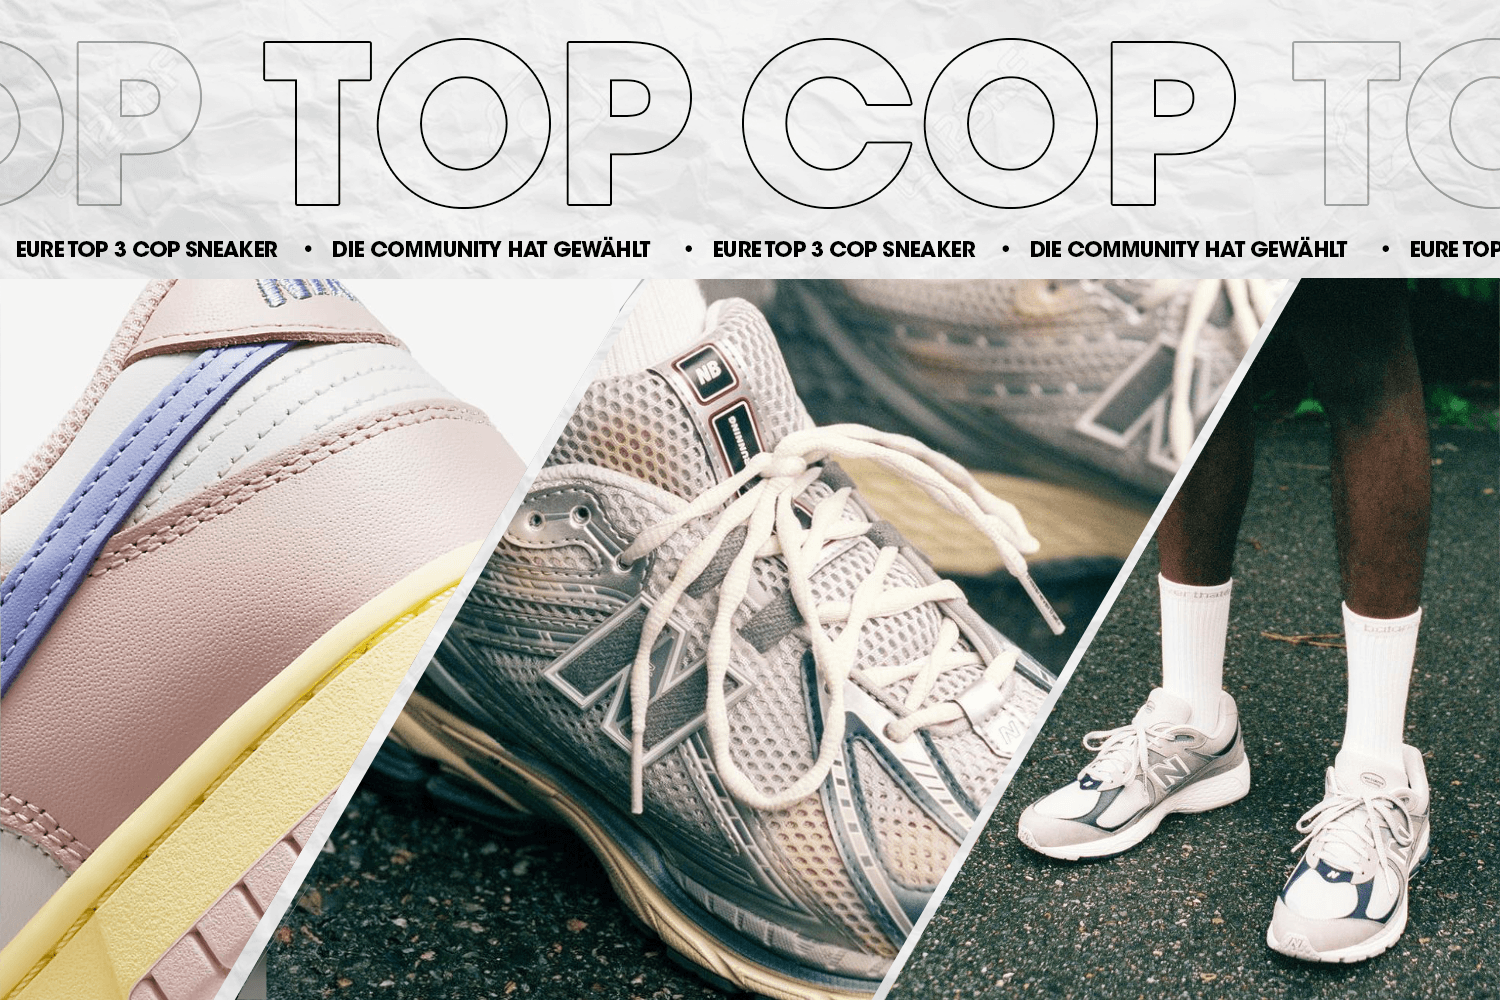 Die Community hat gewählt: Eure Top 3 Cop Sneaker Woche 33